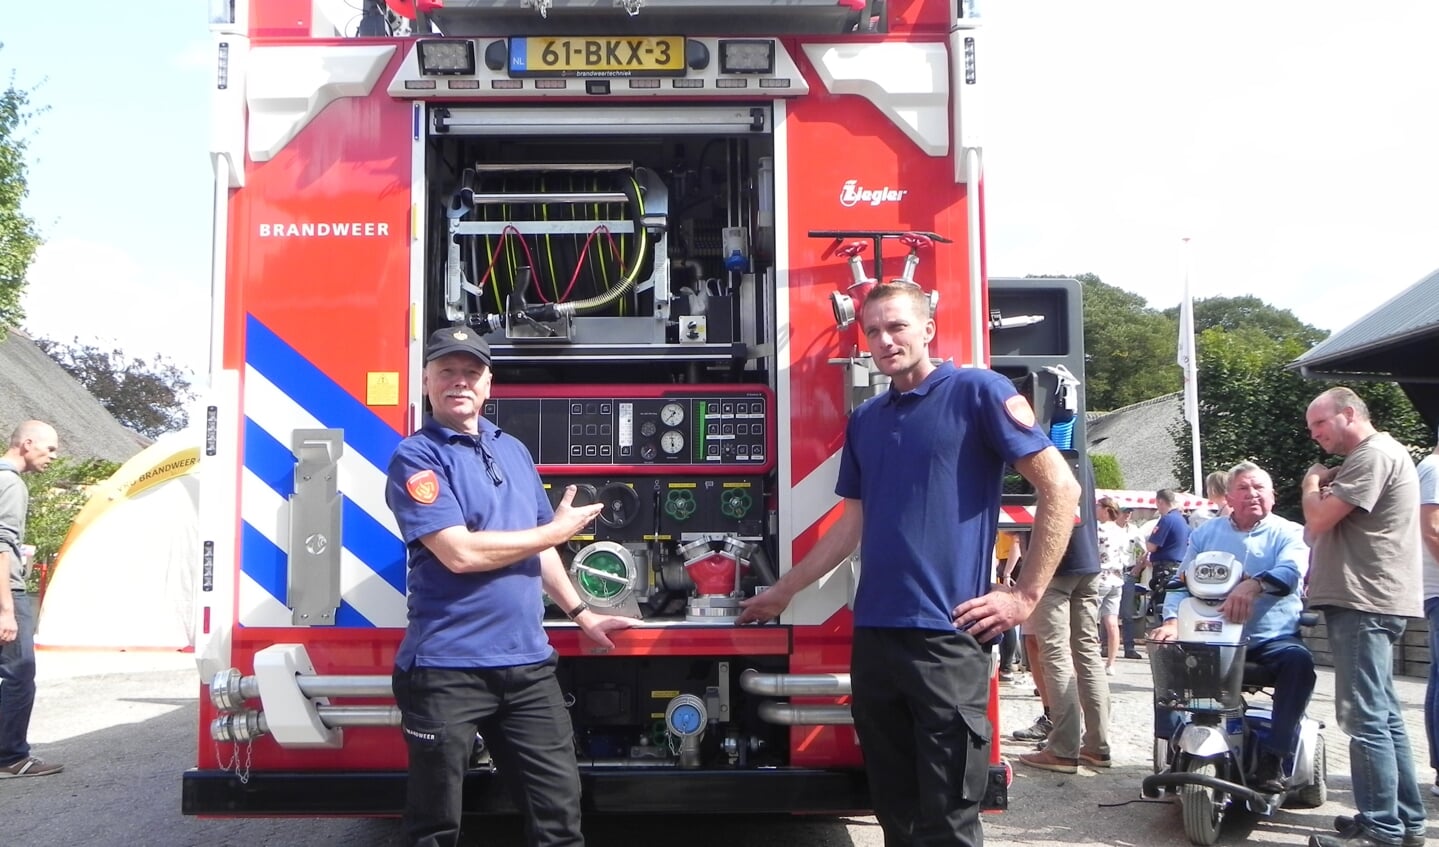 Huidig en opvolgend postcommandant van den Dikkenberg en van Wijk tonen trots hun nieuwe brandweerwagen.   